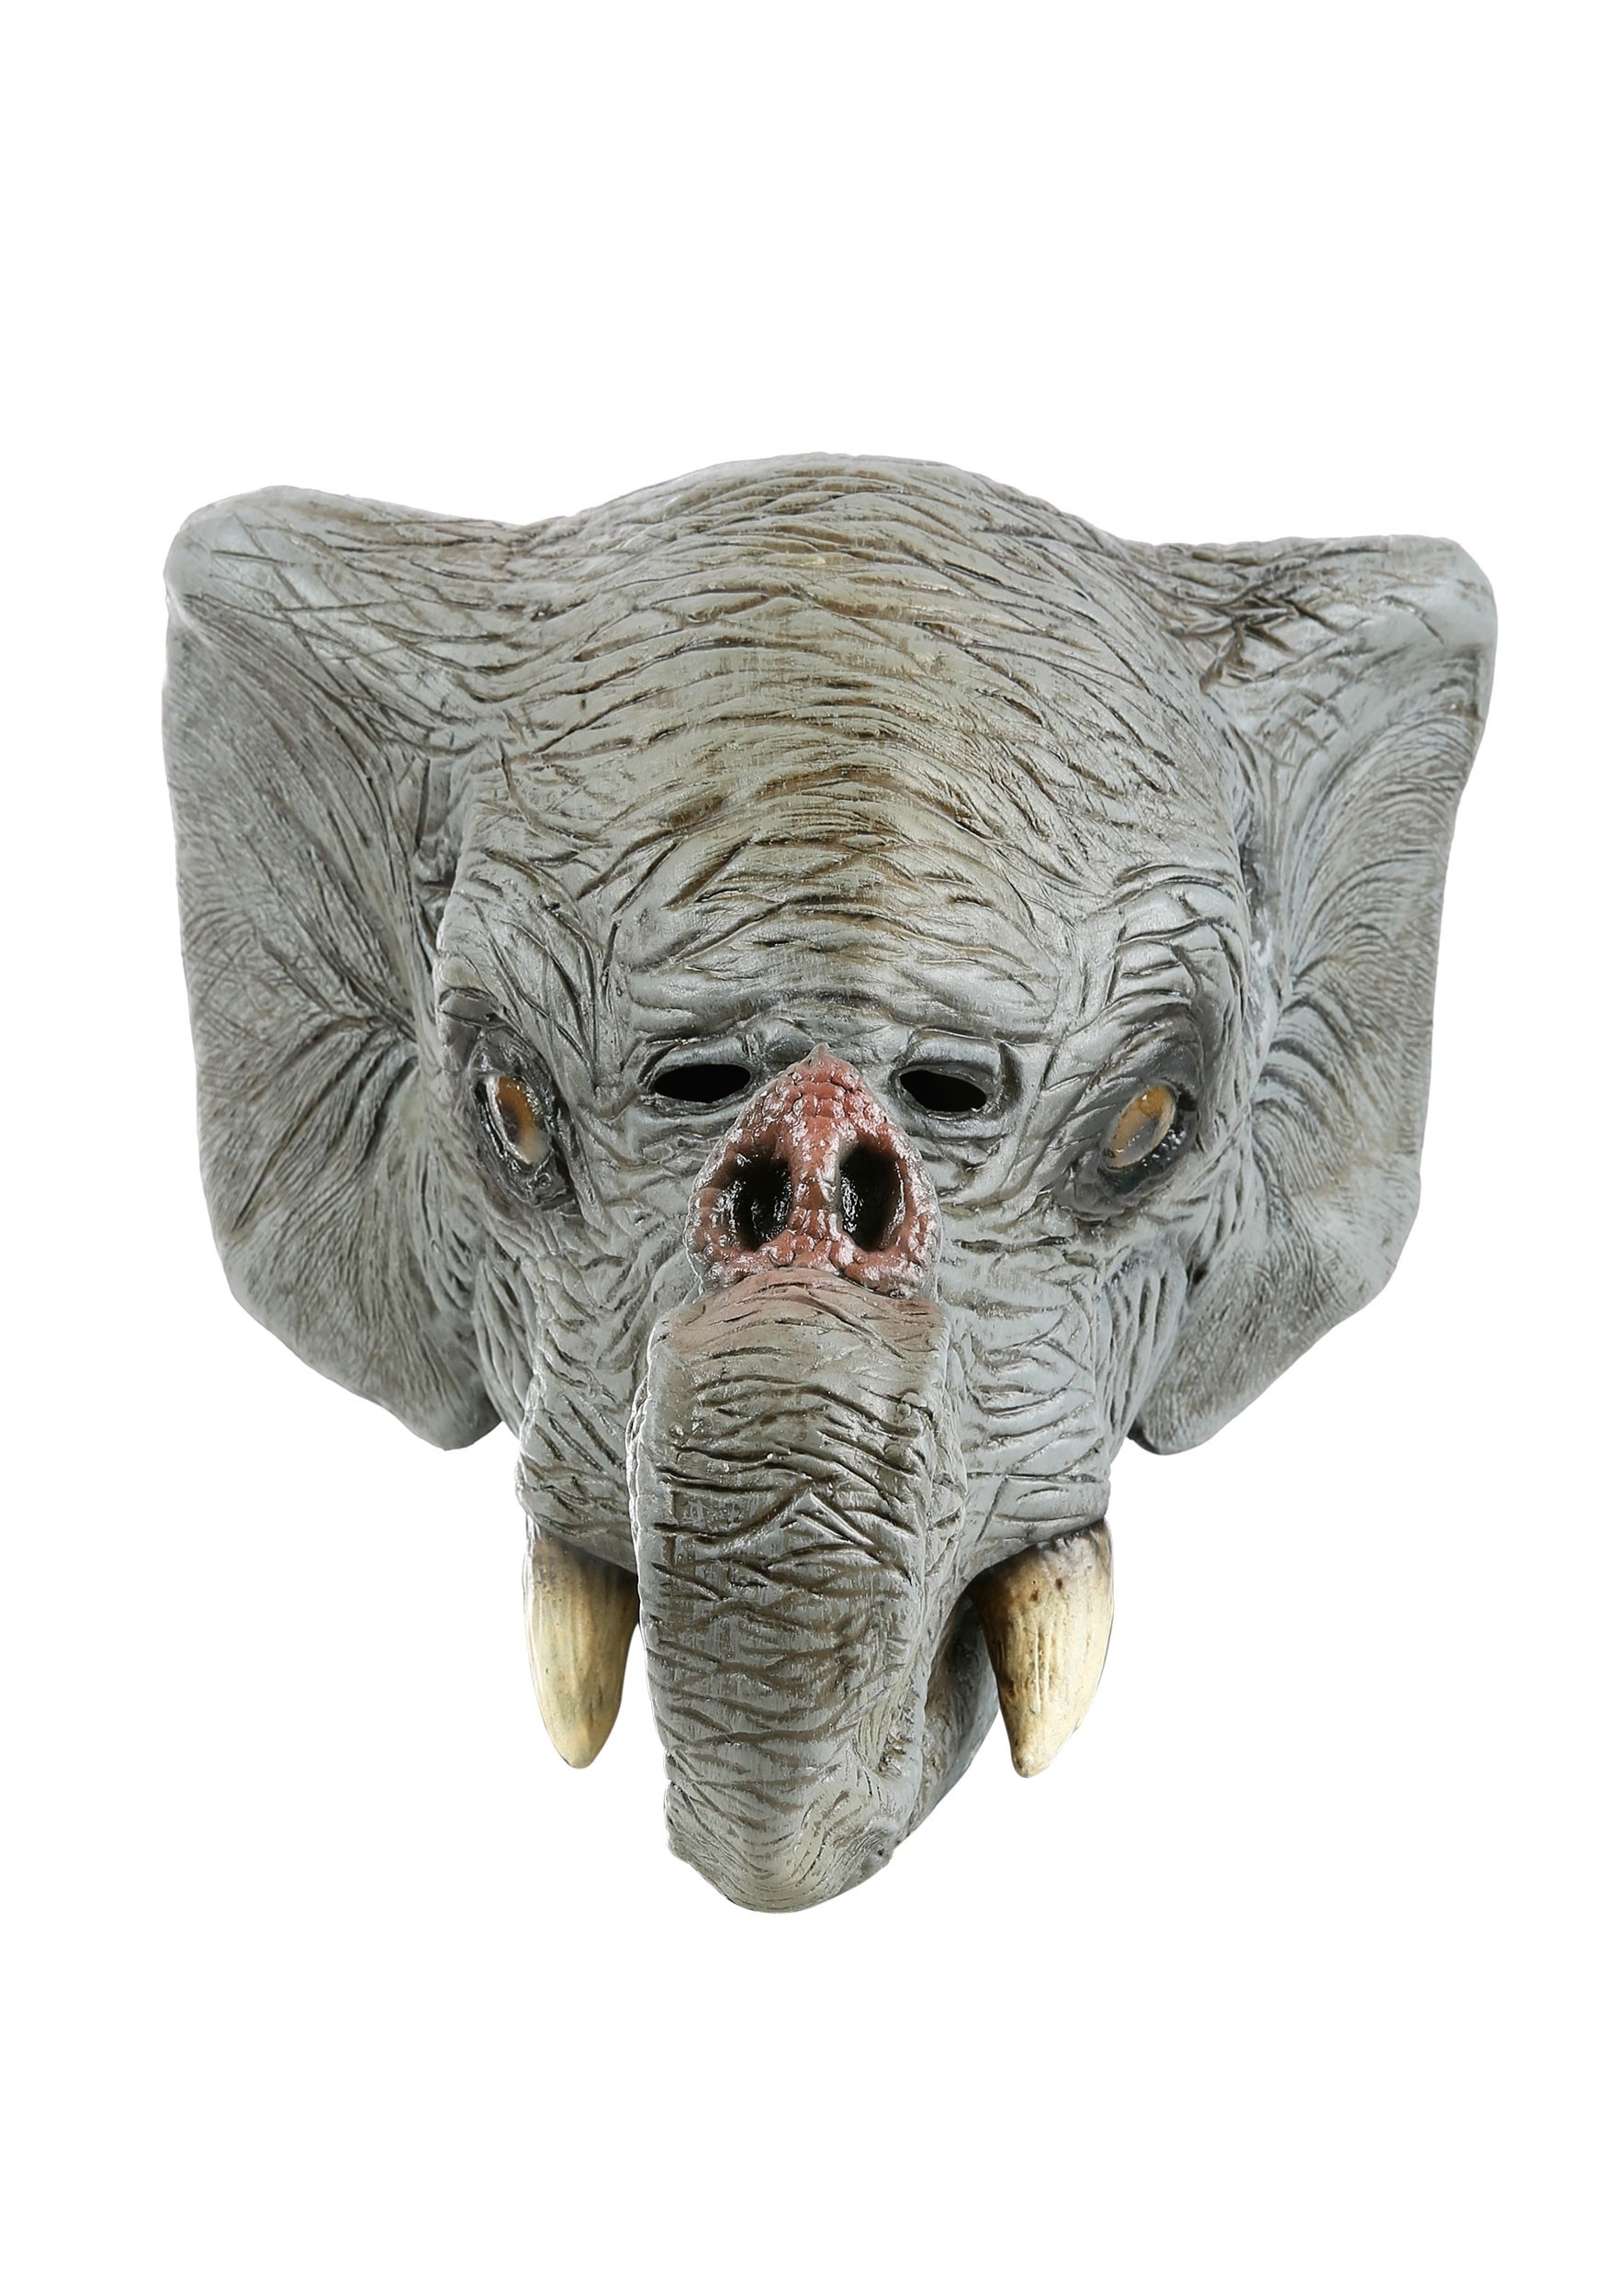 Elephant Latex Mask